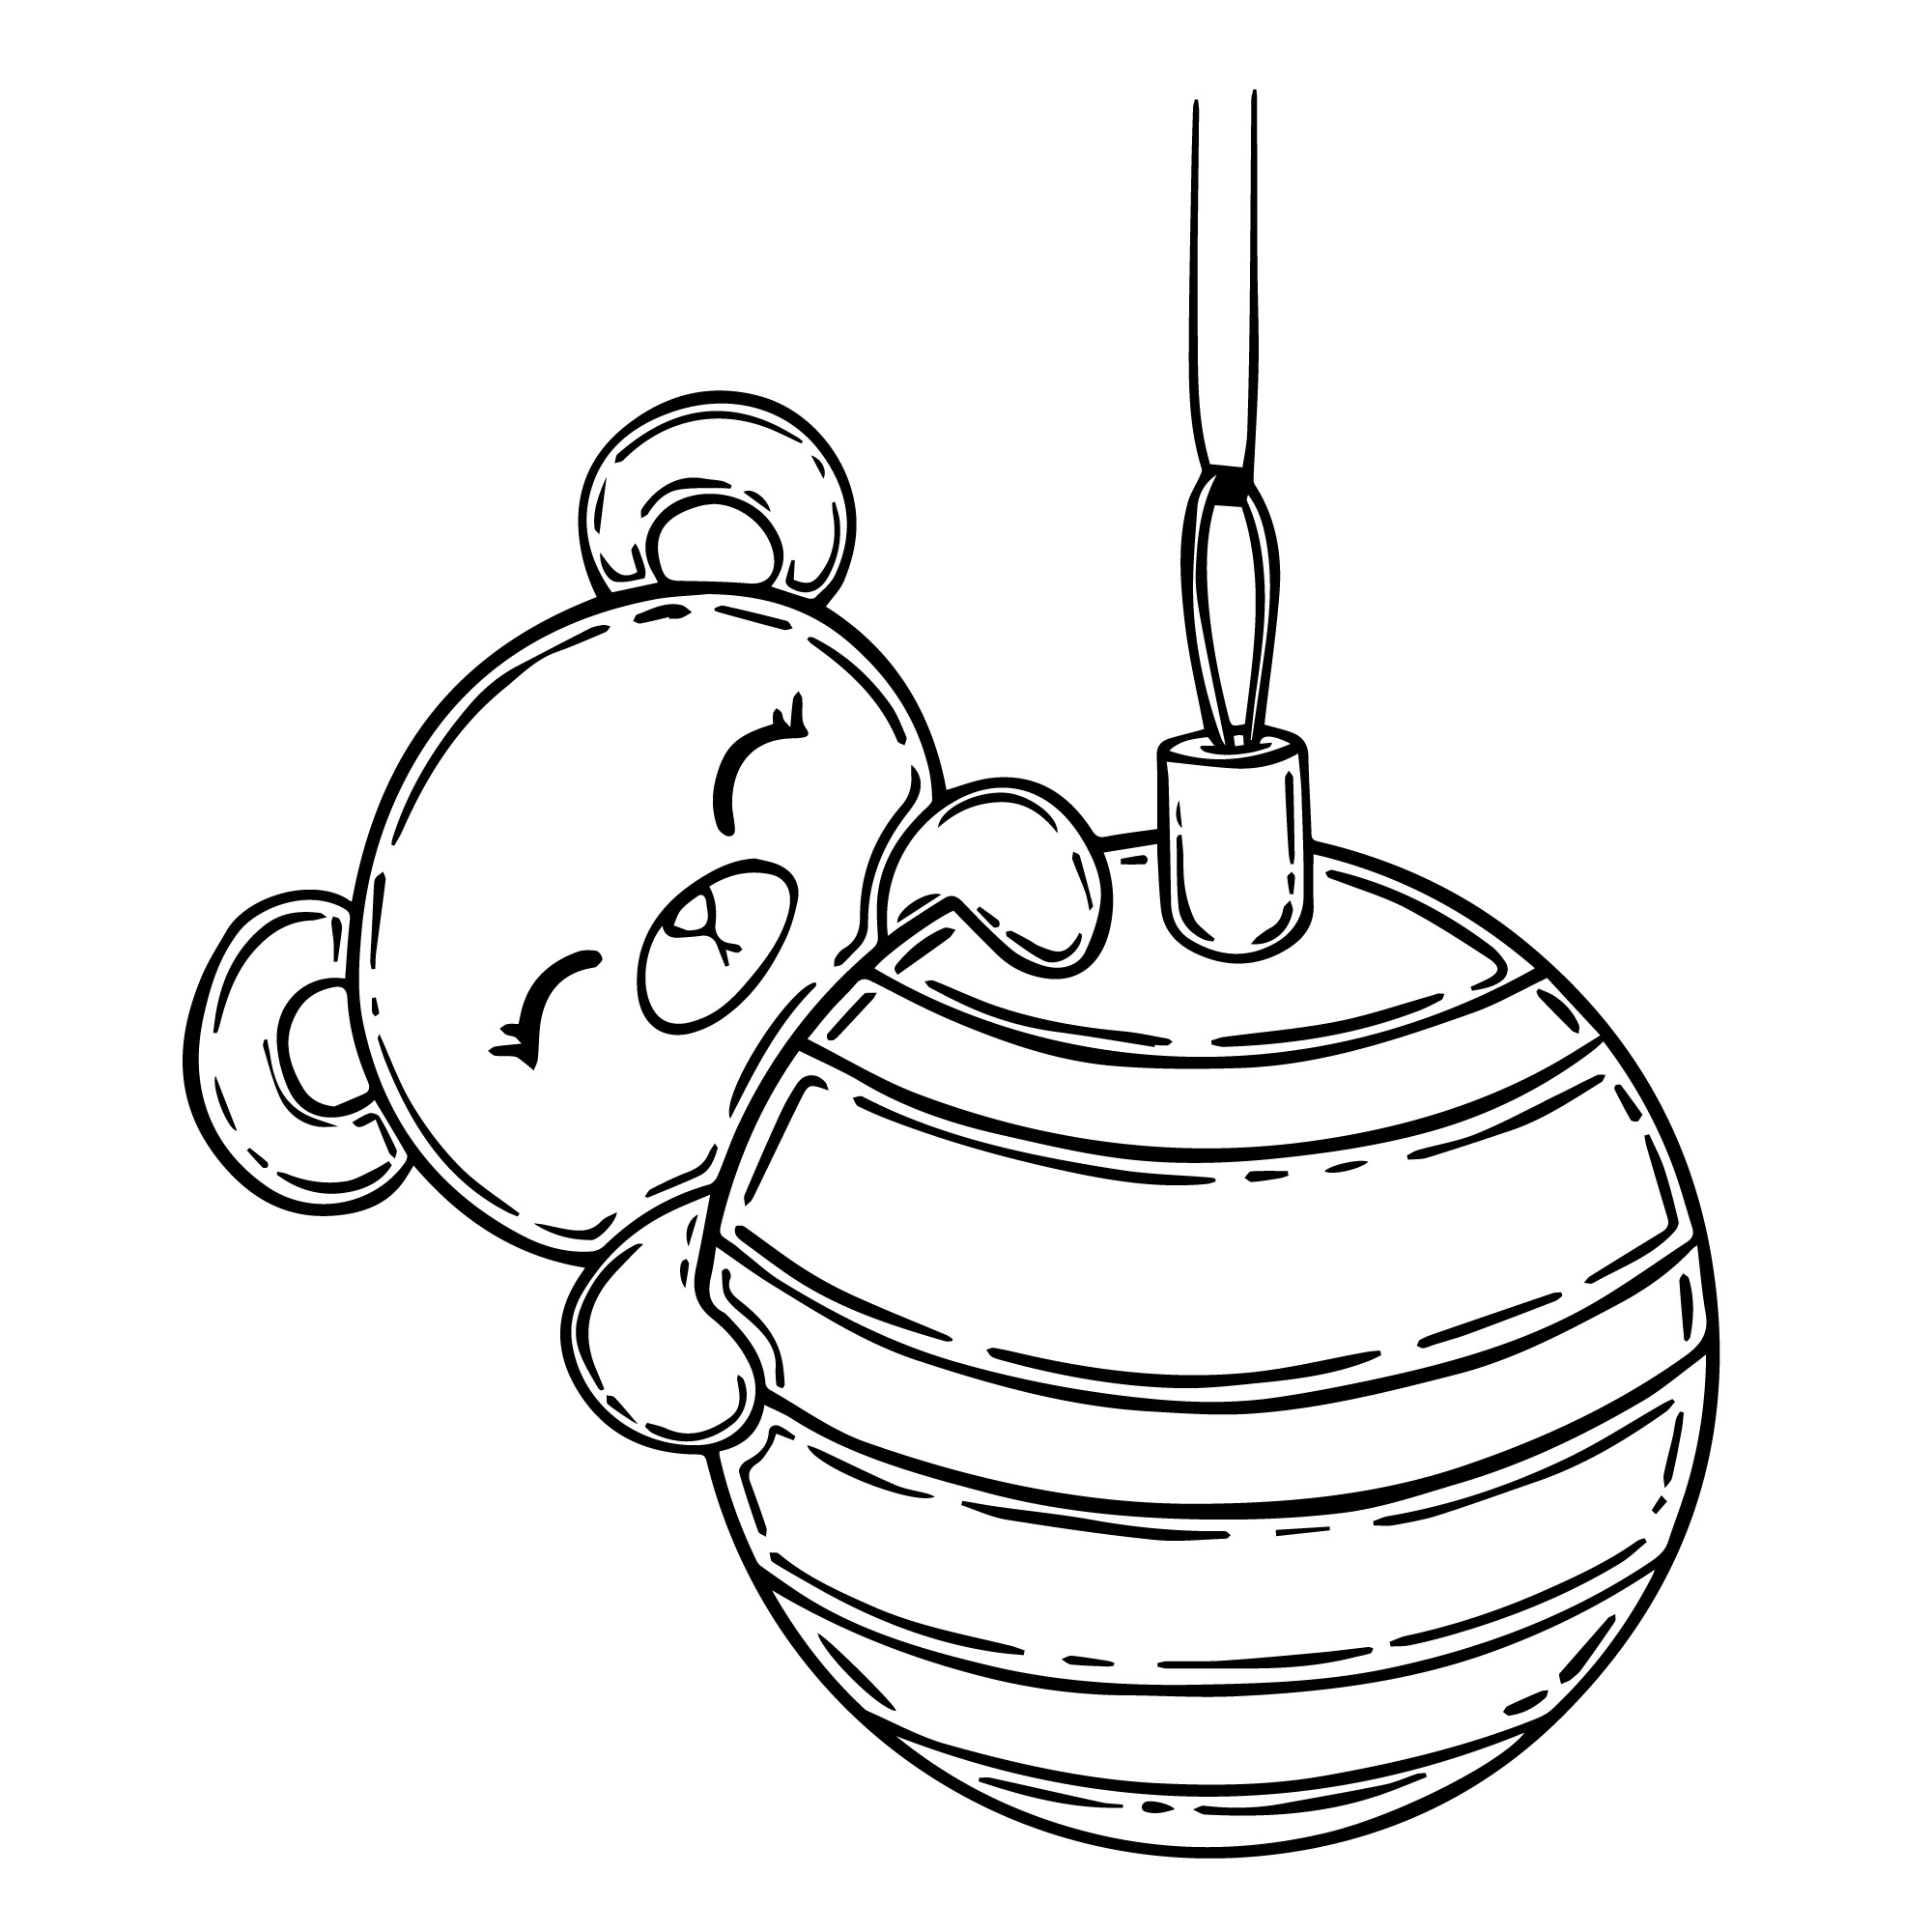 Раскраска для детей: ёлочный шар с маленьким медведем